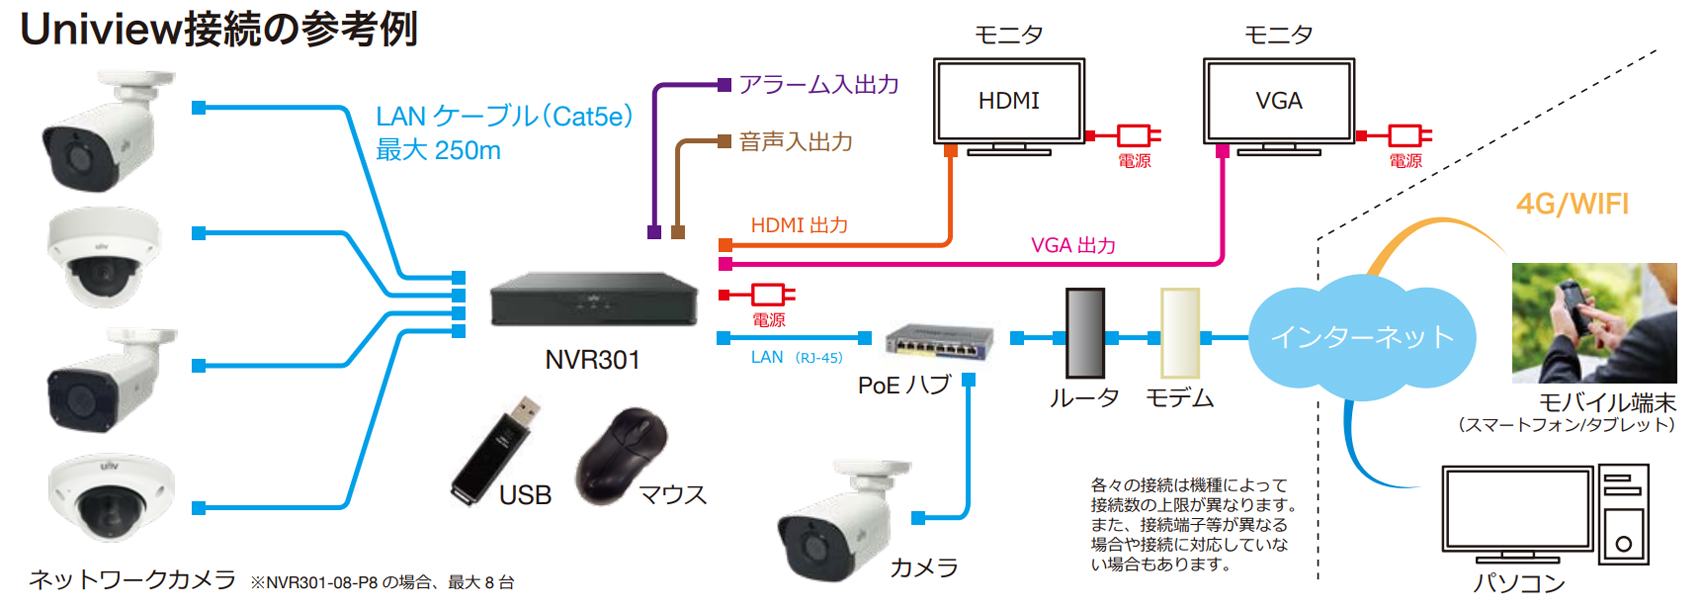 NVR301-04X-P4 PoEポート搭載4chネットワークビデオレコーダー 